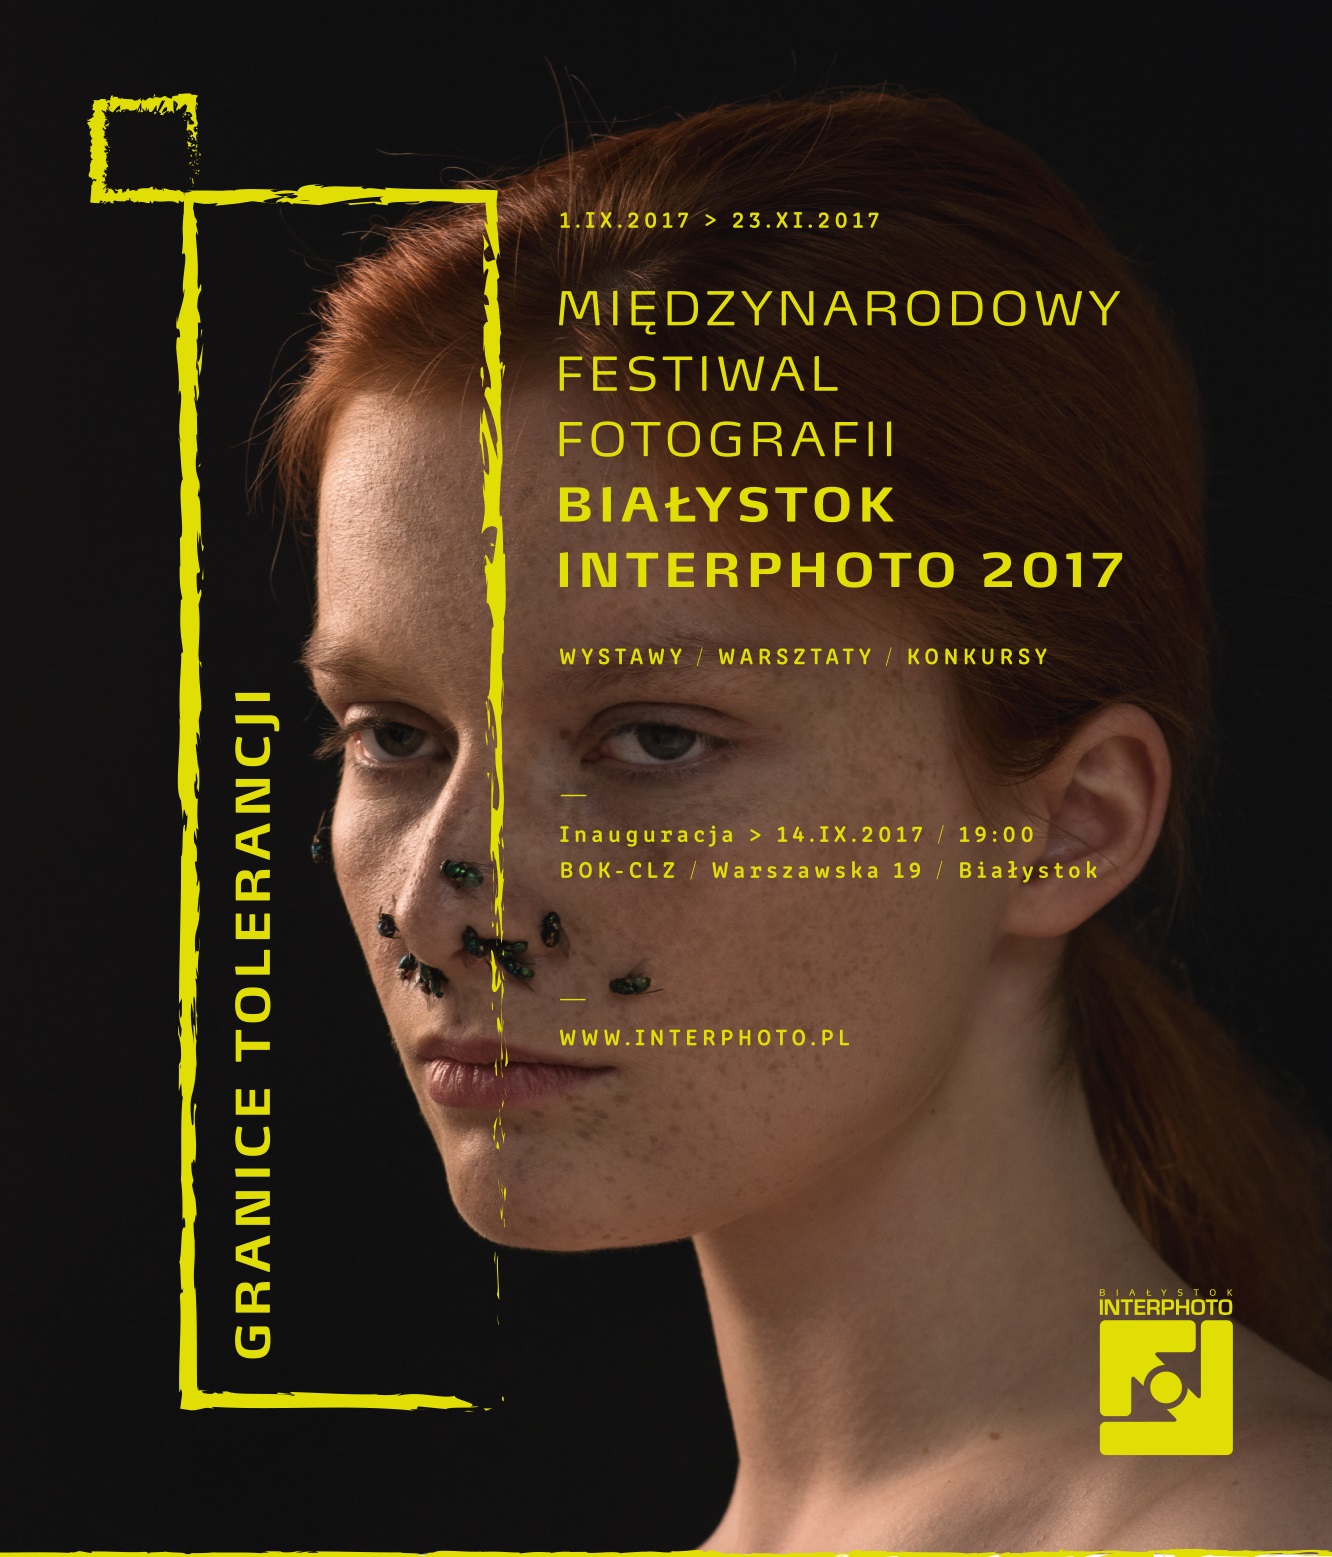 Interphoto 2017 (źródło: materiały prasowe organizatora)